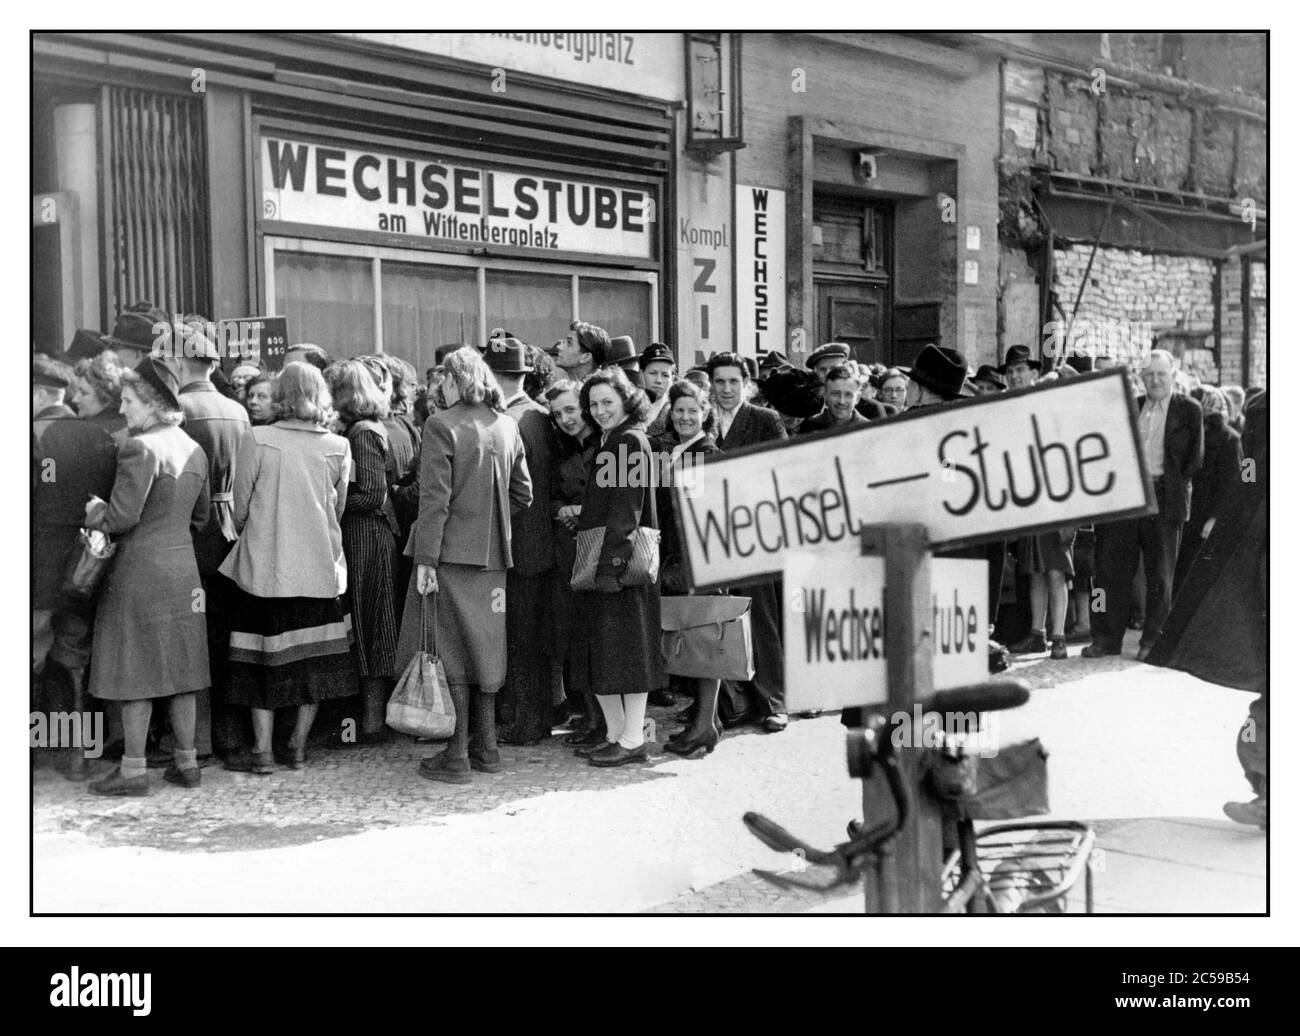 Allemagne de l'Ouest d'après-guerre 1948 échange de monnaie. Foules au bureau de change (Wechsel Stube) sur 20 juin 1948 réorganisation du système monétaire dans les zones d'occupation de l'Allemagne de l'Ouest. Une réforme de la monnaie est entrée en vigueur et, depuis 21 juin 1948, la marque de la « Deutsche » a remplacé les moyens de paiement de la « Reichsmark » et de la « Rentenmark » est devenue invalide. Après la Seconde Guerre mondiale, les biens sont restés très rares. Les denrées alimentaires et autres produits n'étaient disponibles qu'en petites quantités et uniquement par l'intermédiaire de timbres alimentaires et de certificats d'achat. Banque D'Images